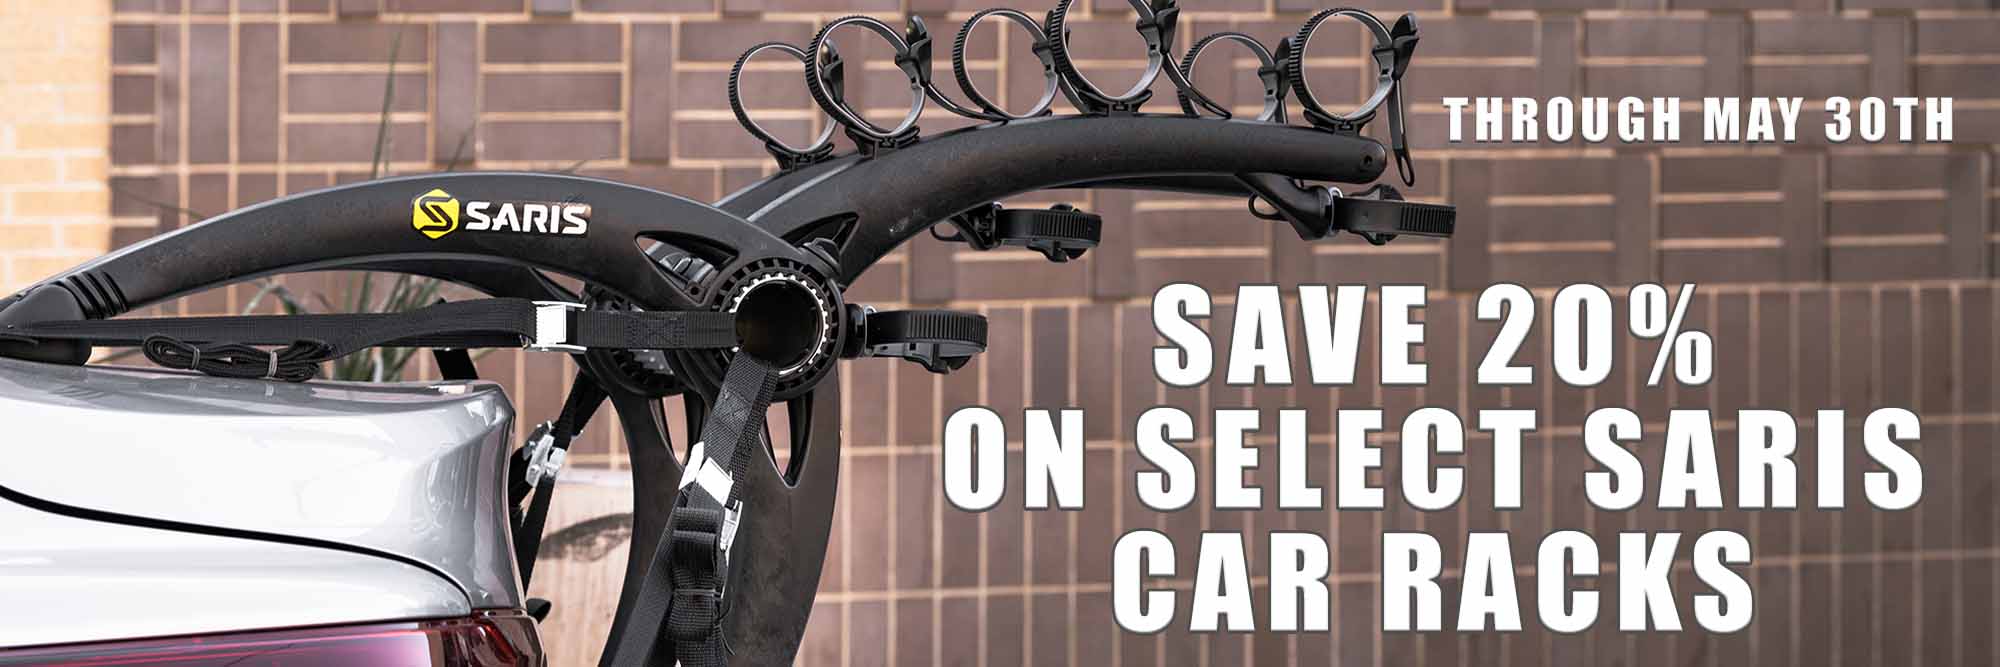 Saris Car Rack Sale through May 30th